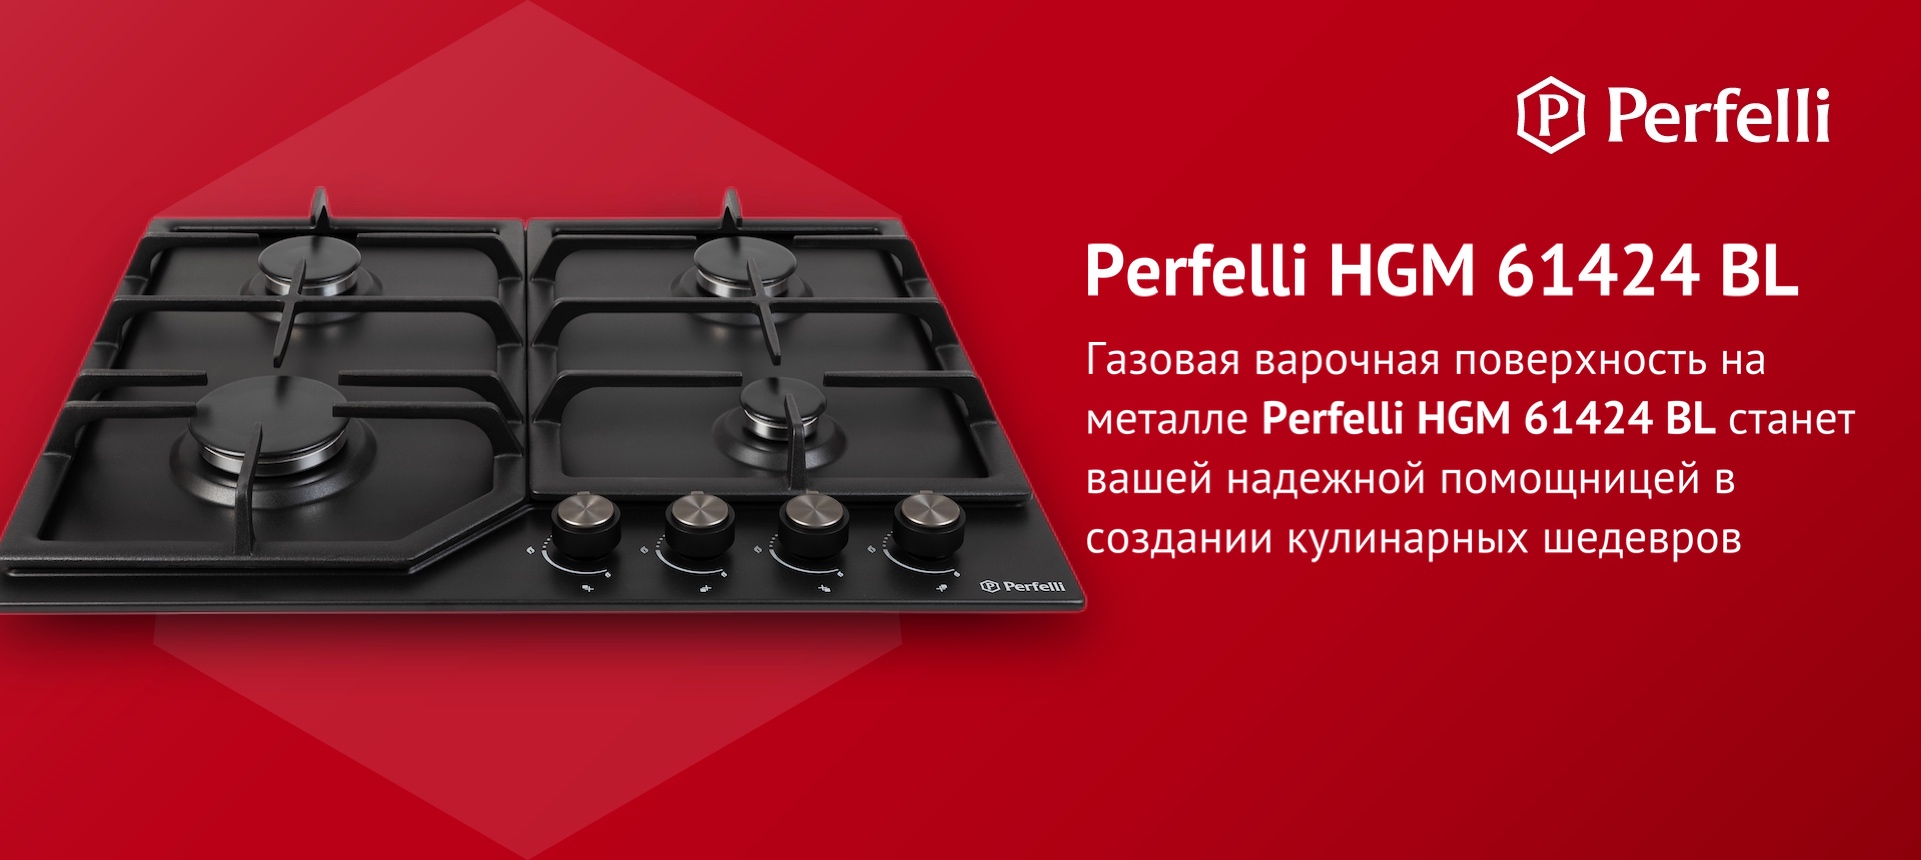 Газовая варочная поверхность на металле Perfelli HGM 61424 BL станет вашей надежной помощницей в создании кулинарных шедевров